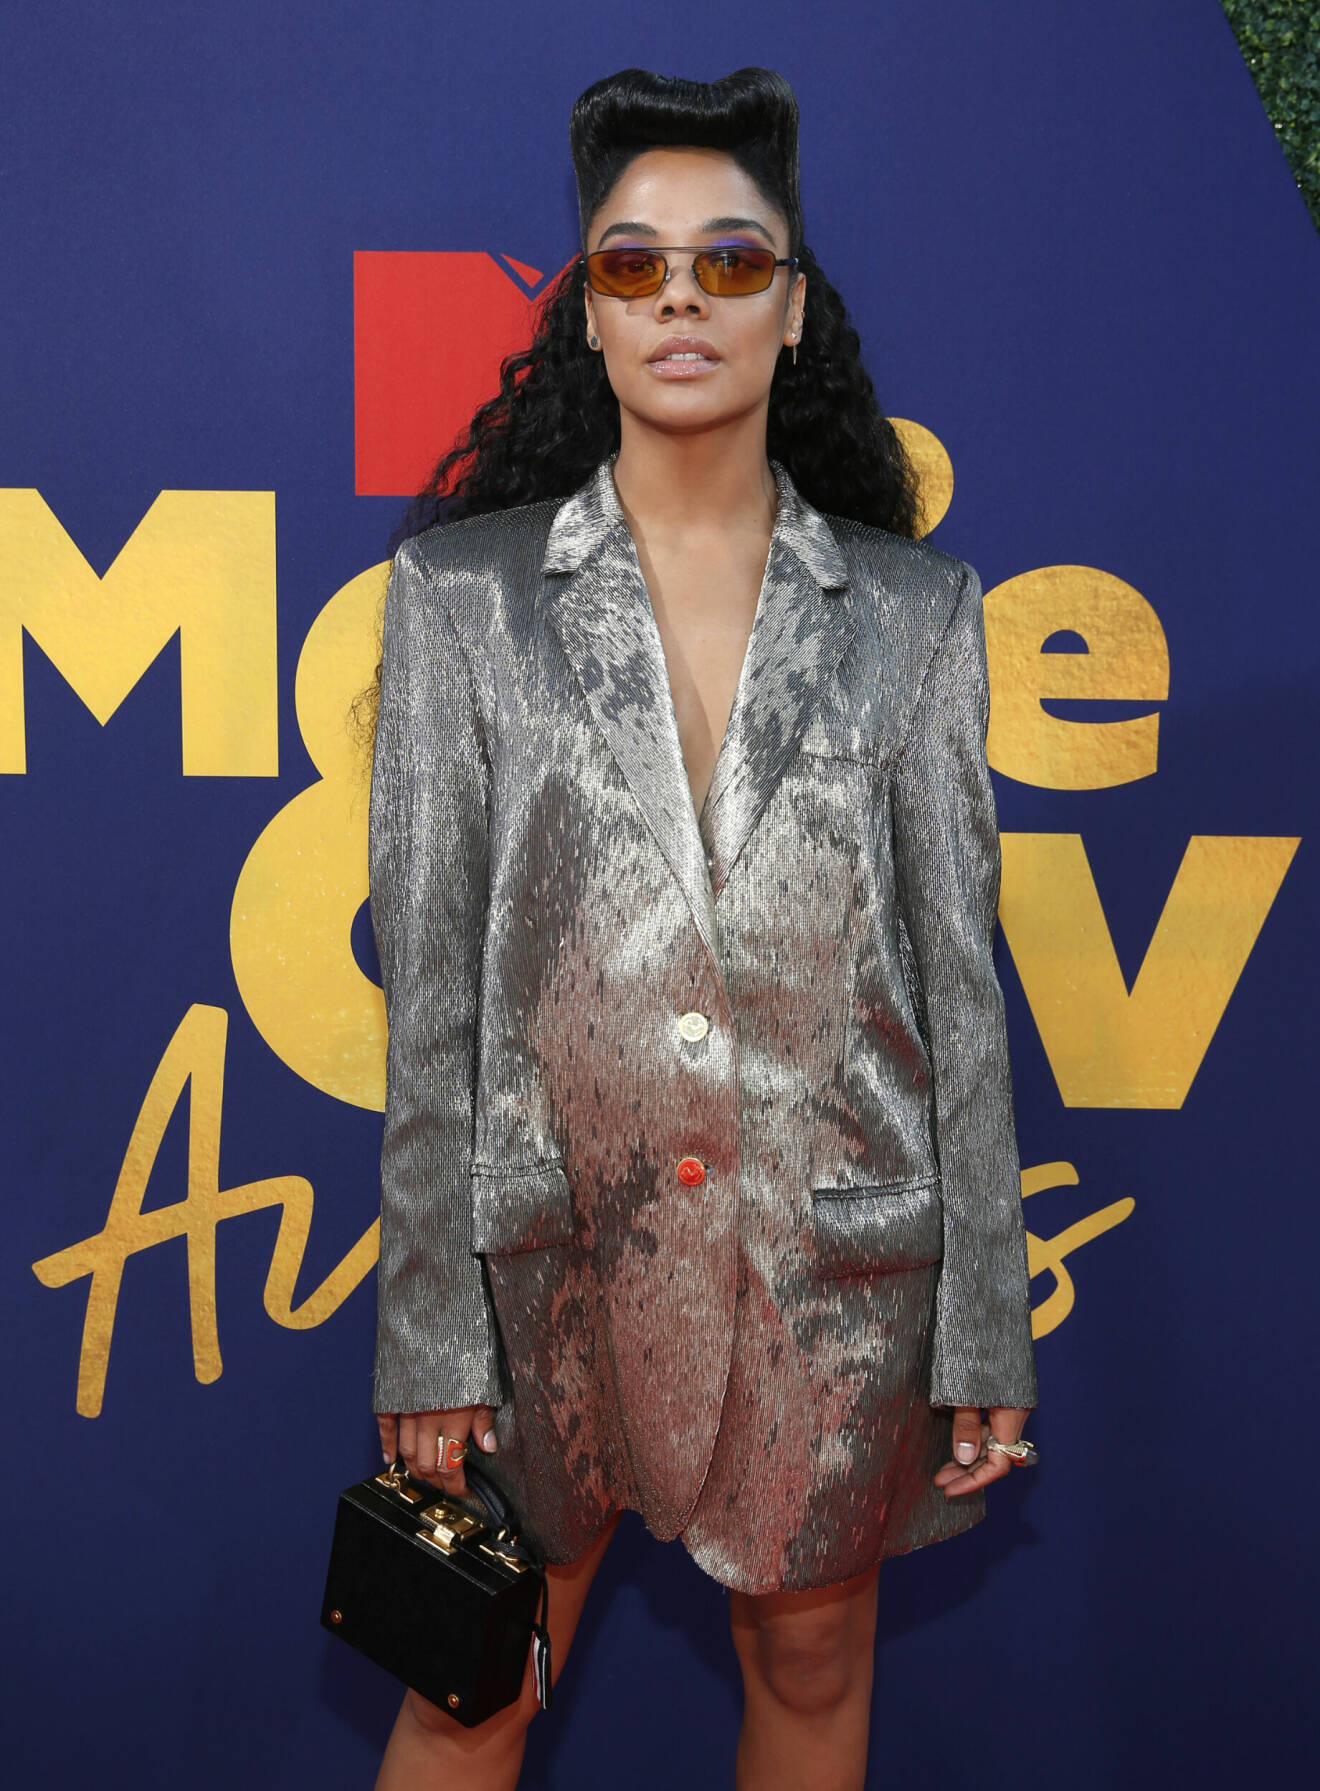 Iklädd silverkavaj anlände Tessa Thompson till MTV Movie &amp; TV Awards.